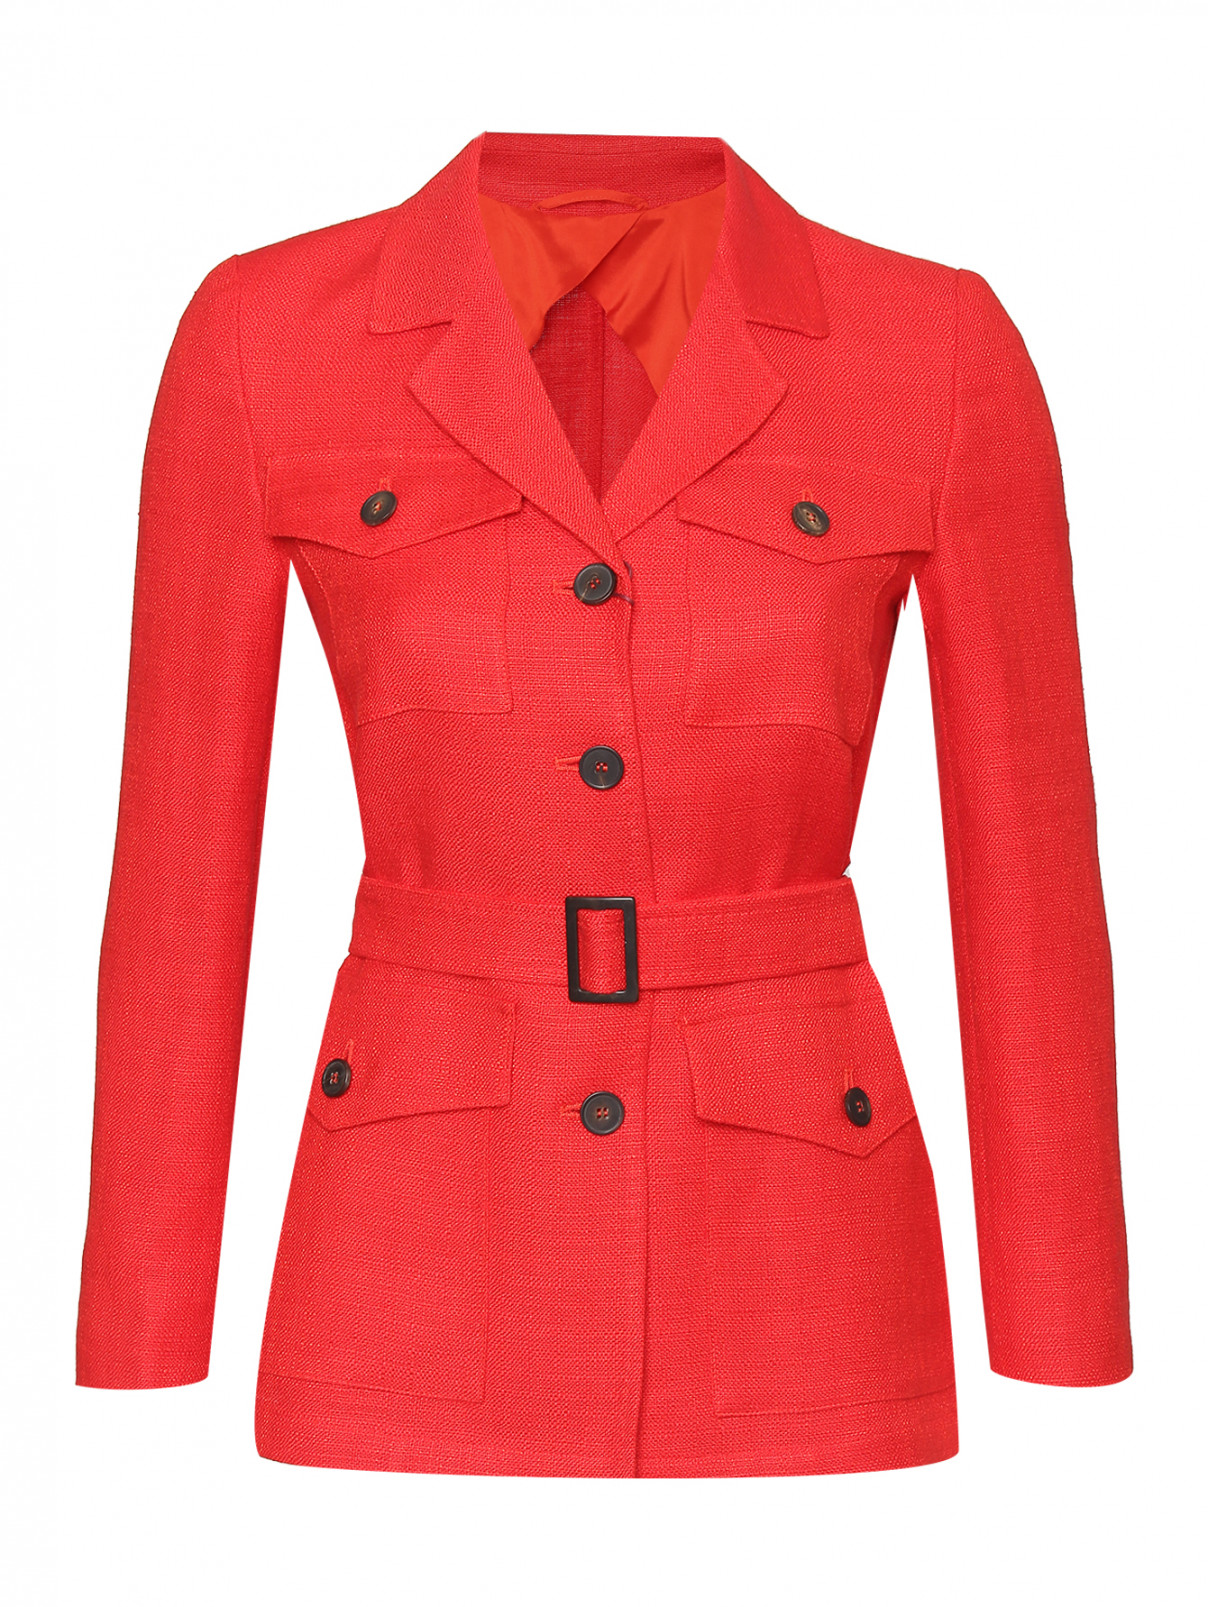 Жакет из льна с накладными карманами Max Mara  –  Общий вид  – Цвет:  Красный